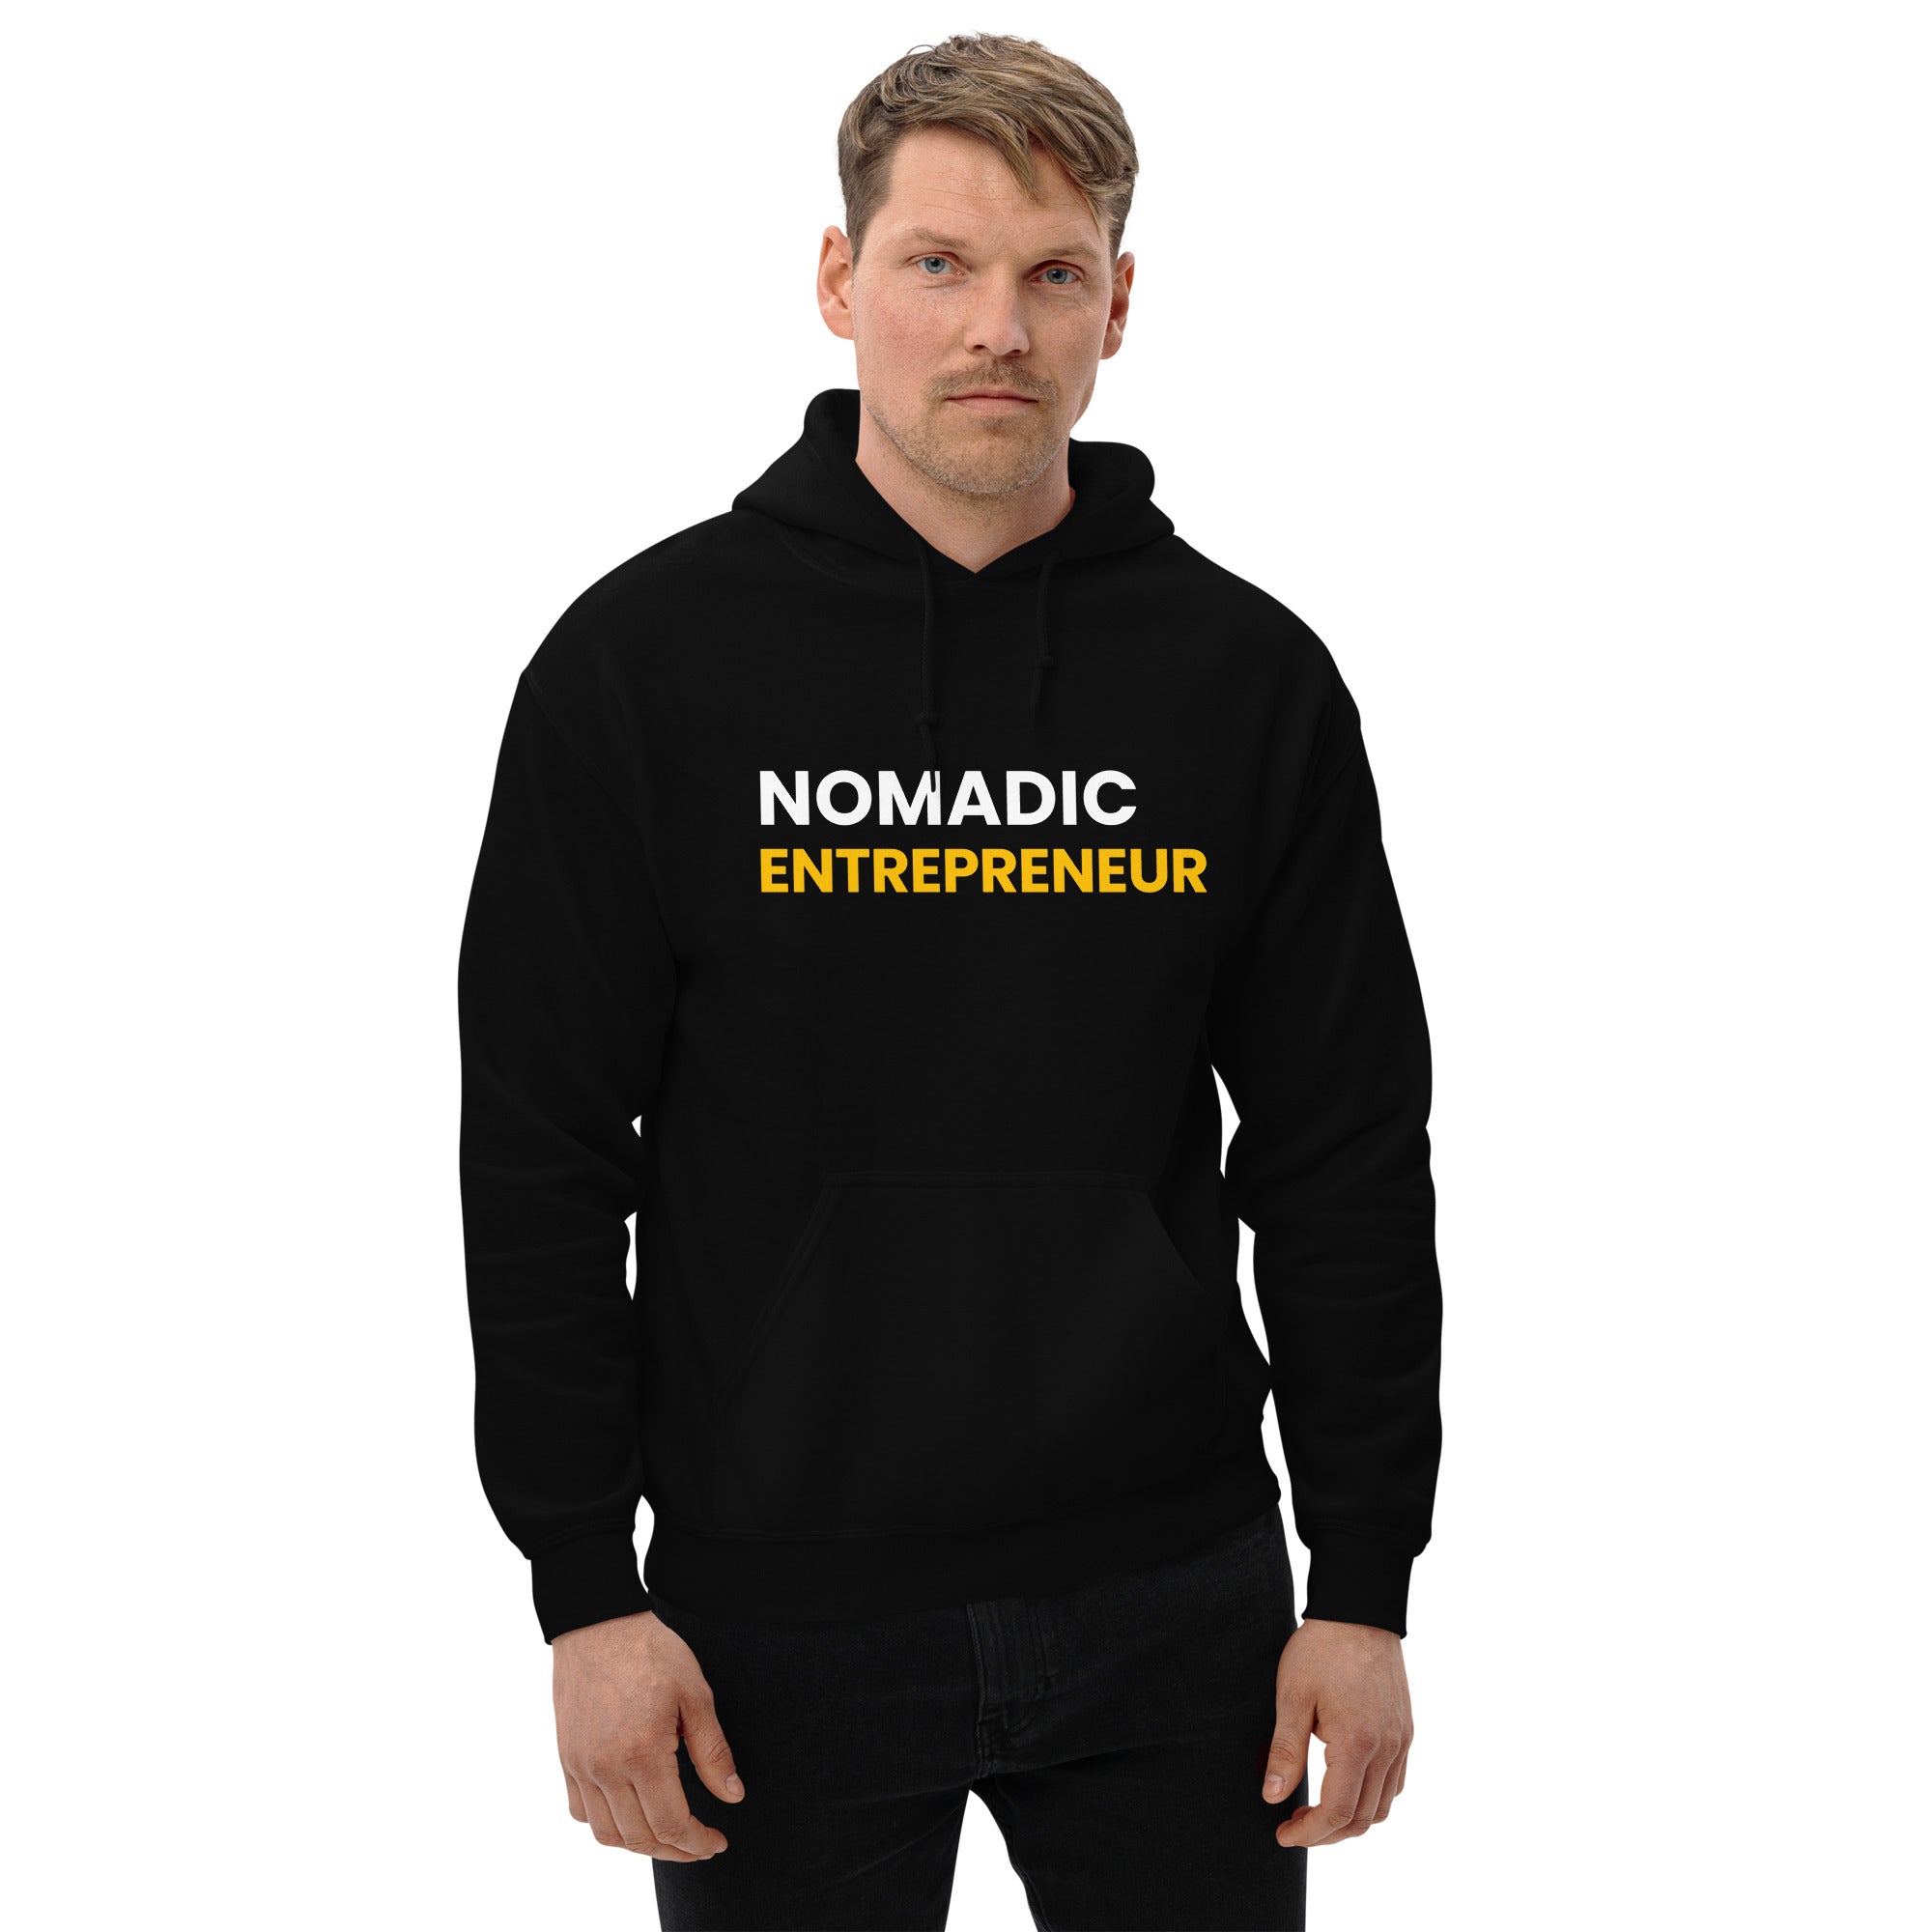 Nomadic Entrepreneur Unisex Hoodie